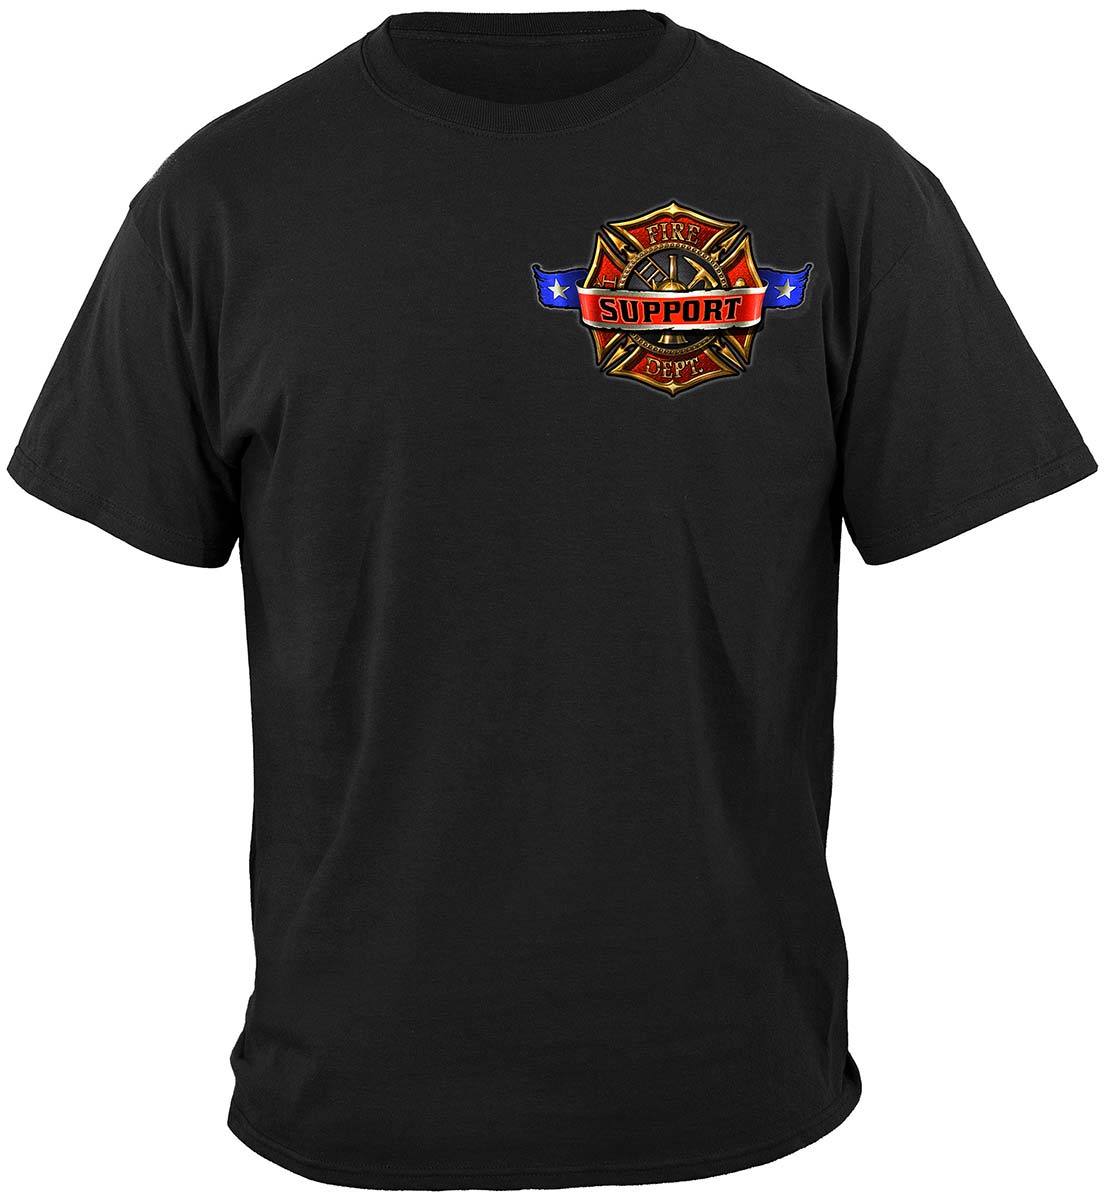 Firefighter Support Premium T-Shirt